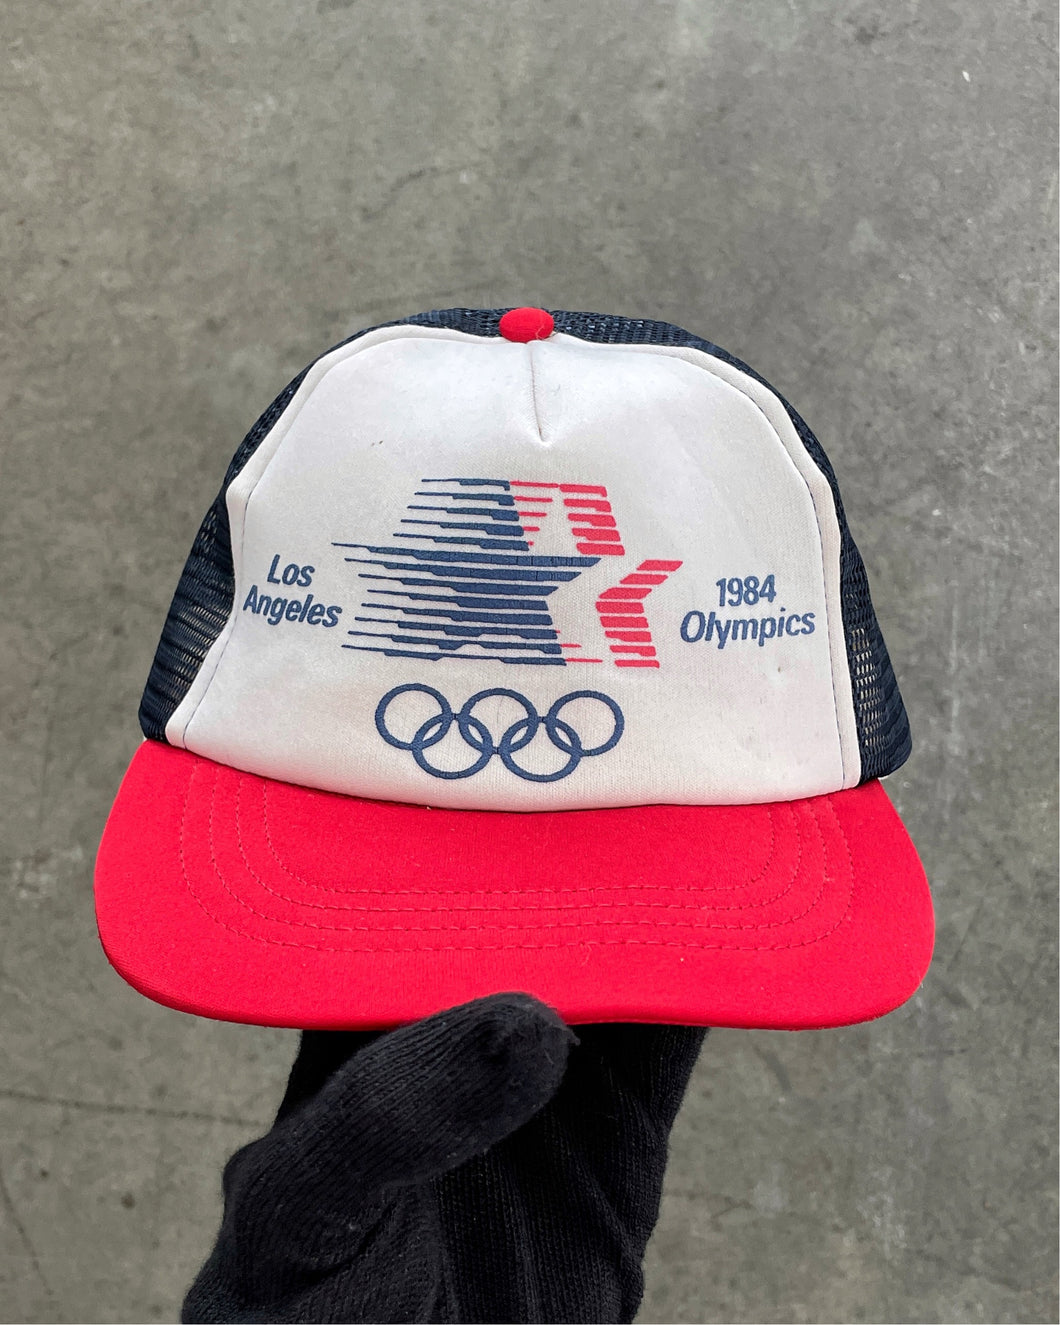 “LOS ANGELES OLYMPICS” FOAM TRUCKER HAT - 1984